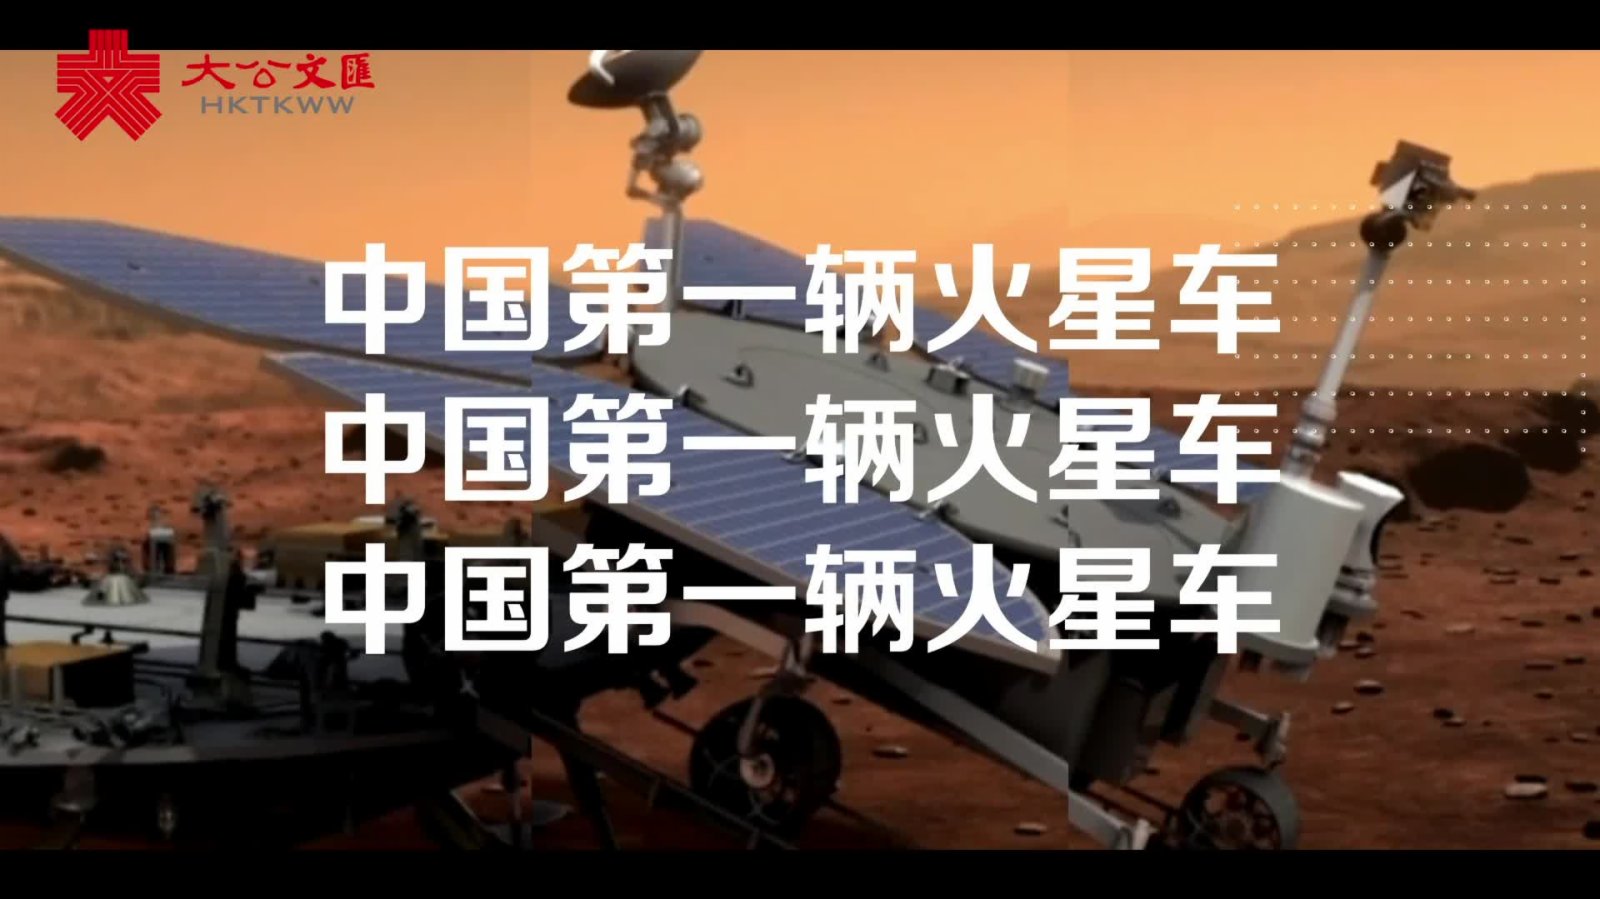 中國首輛火星車徵名初選揭曉　弘毅麒麟哪吒居前三